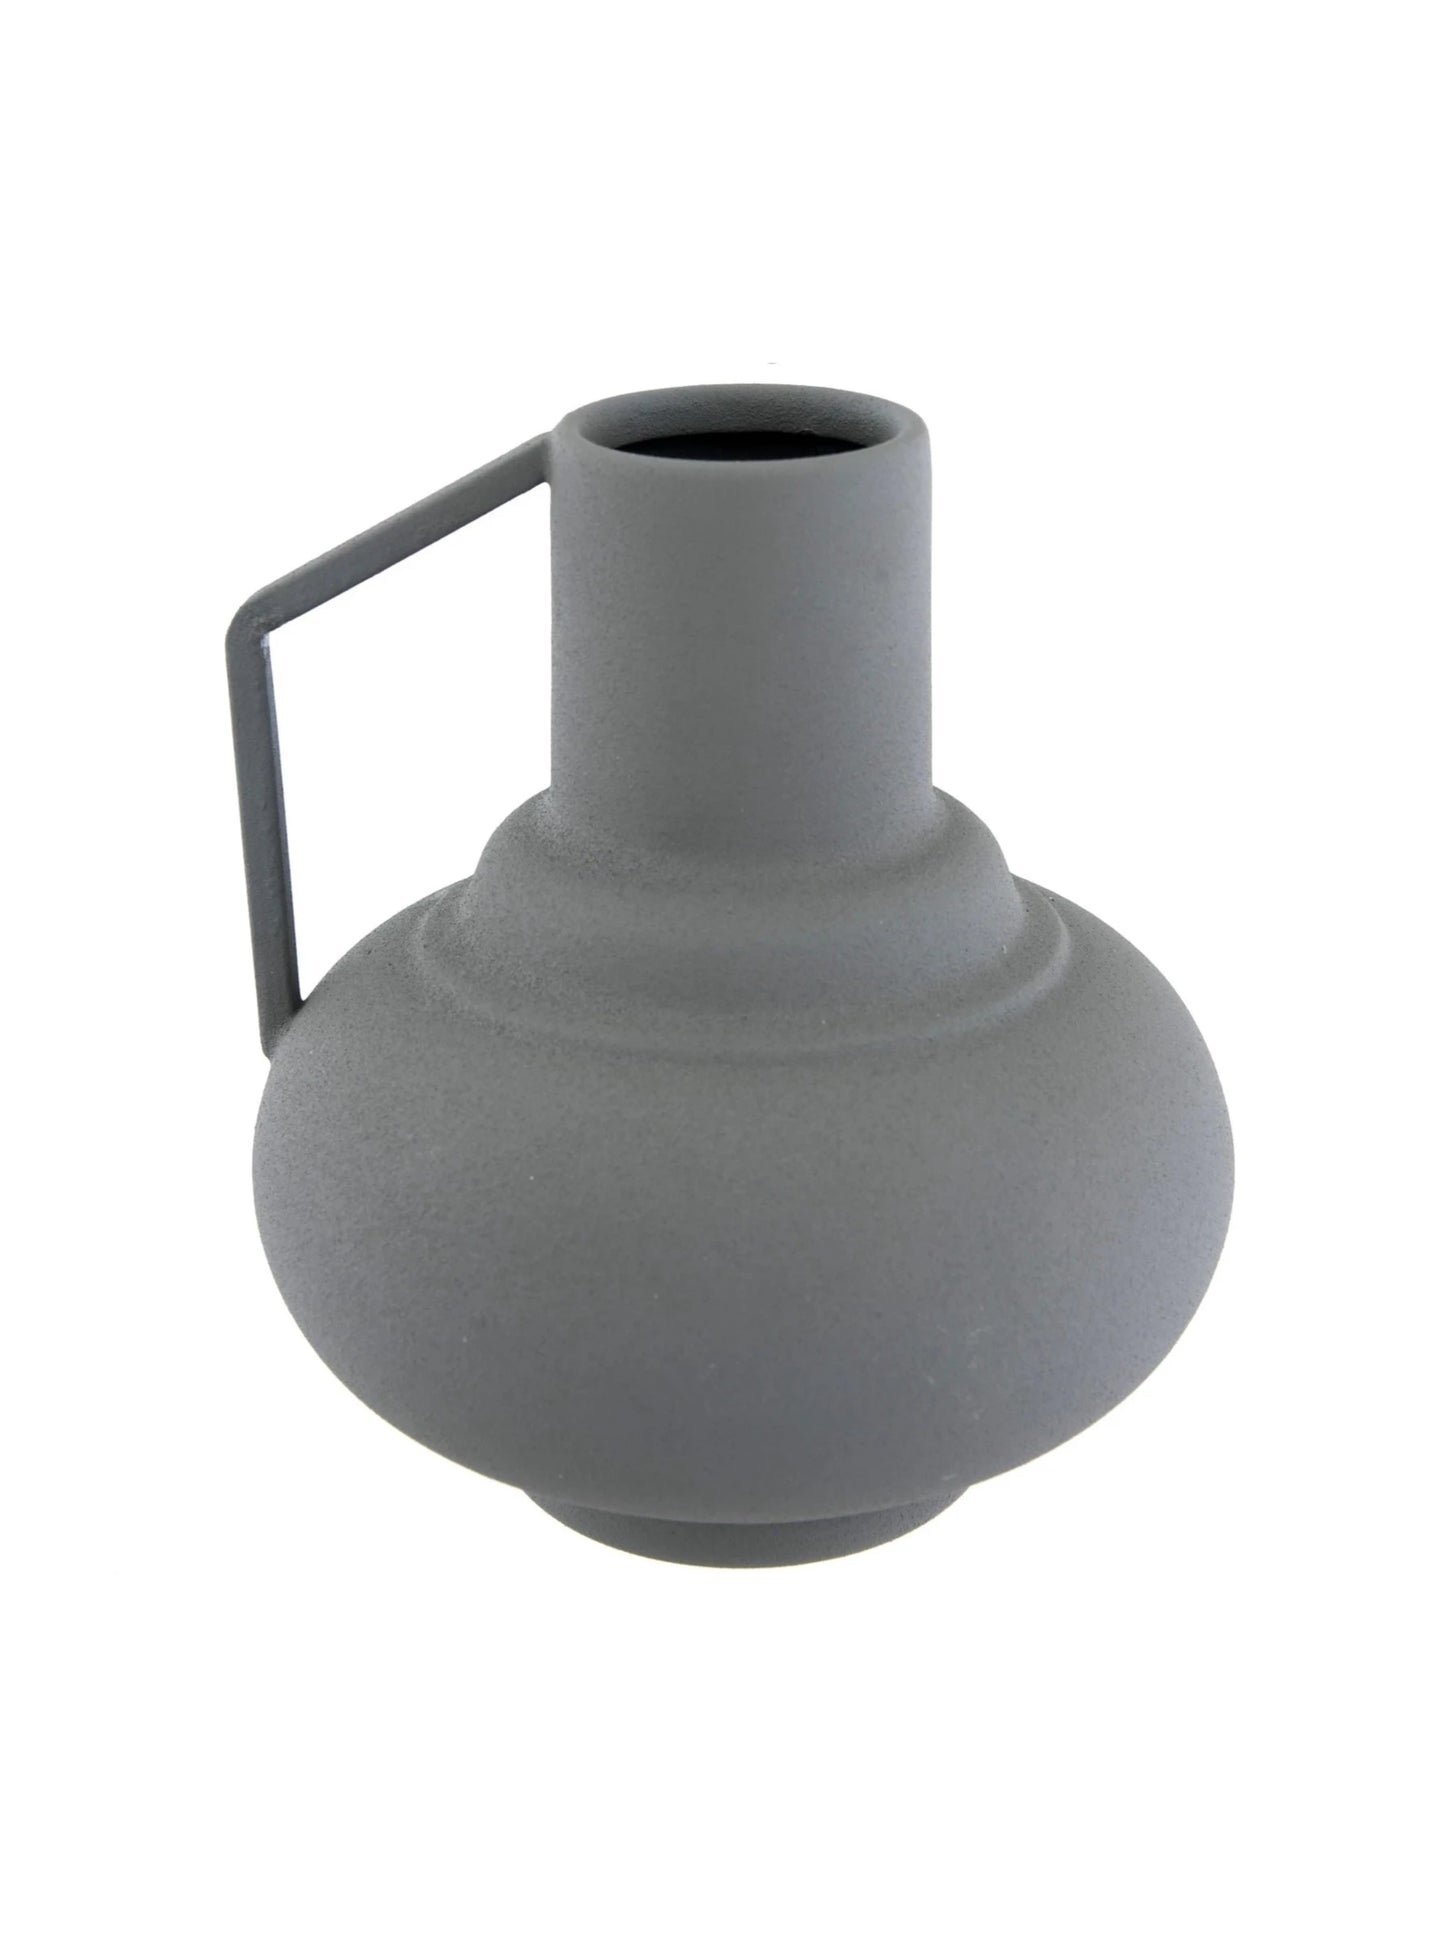 textured metal vase with handle